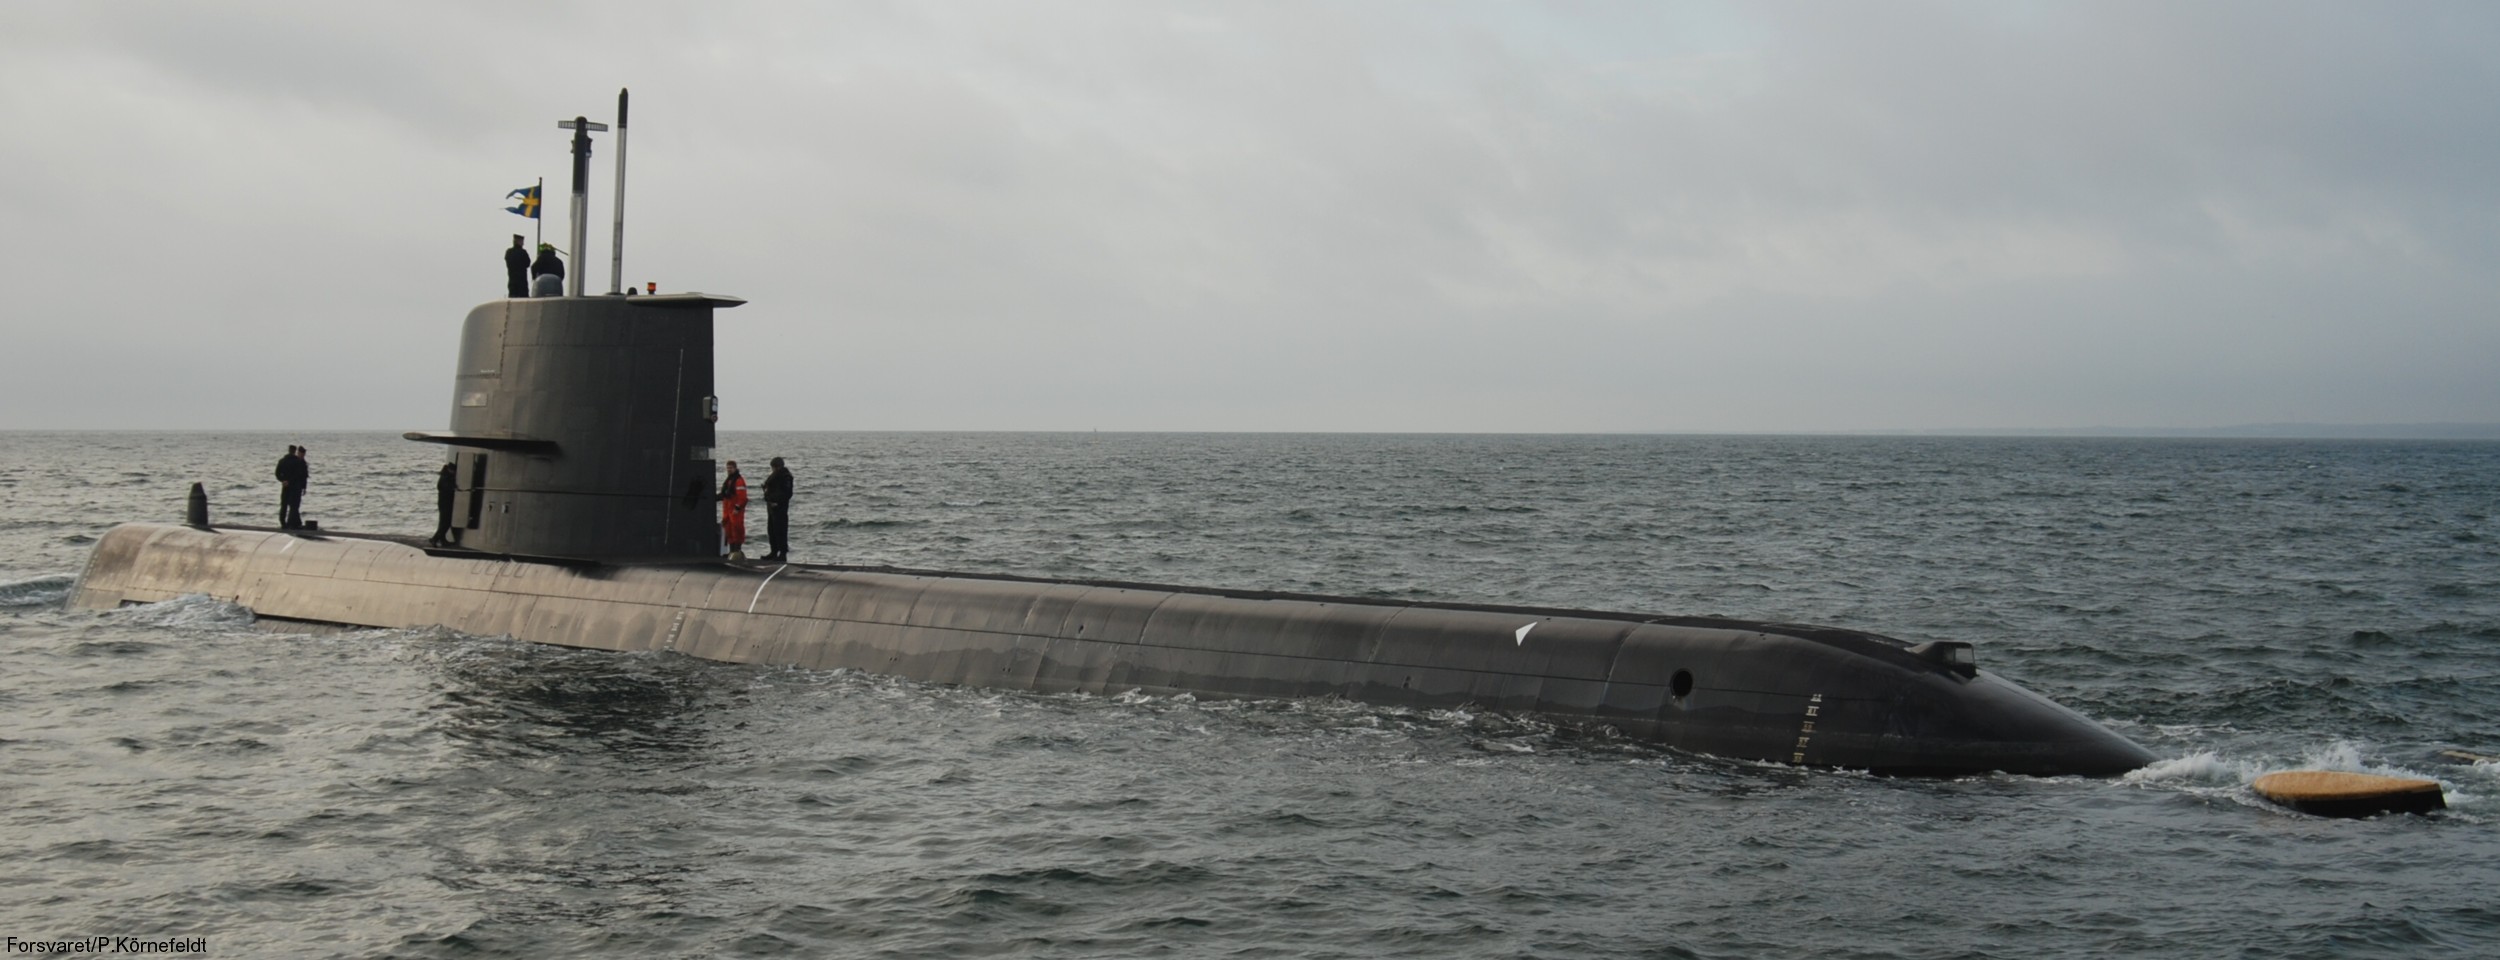 hswms hms gotland gtd class submarine ssk swedish navy svenska marinen försvarsmakten kockums 36